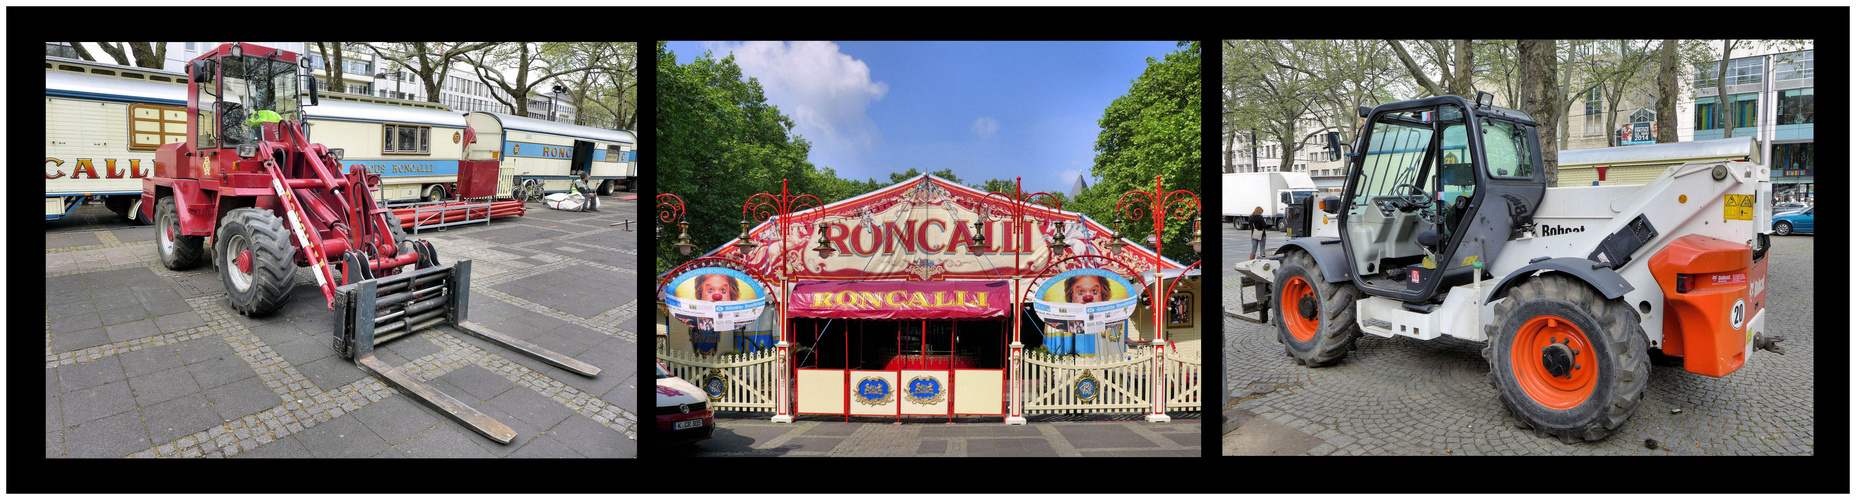 Roncalli in Köln